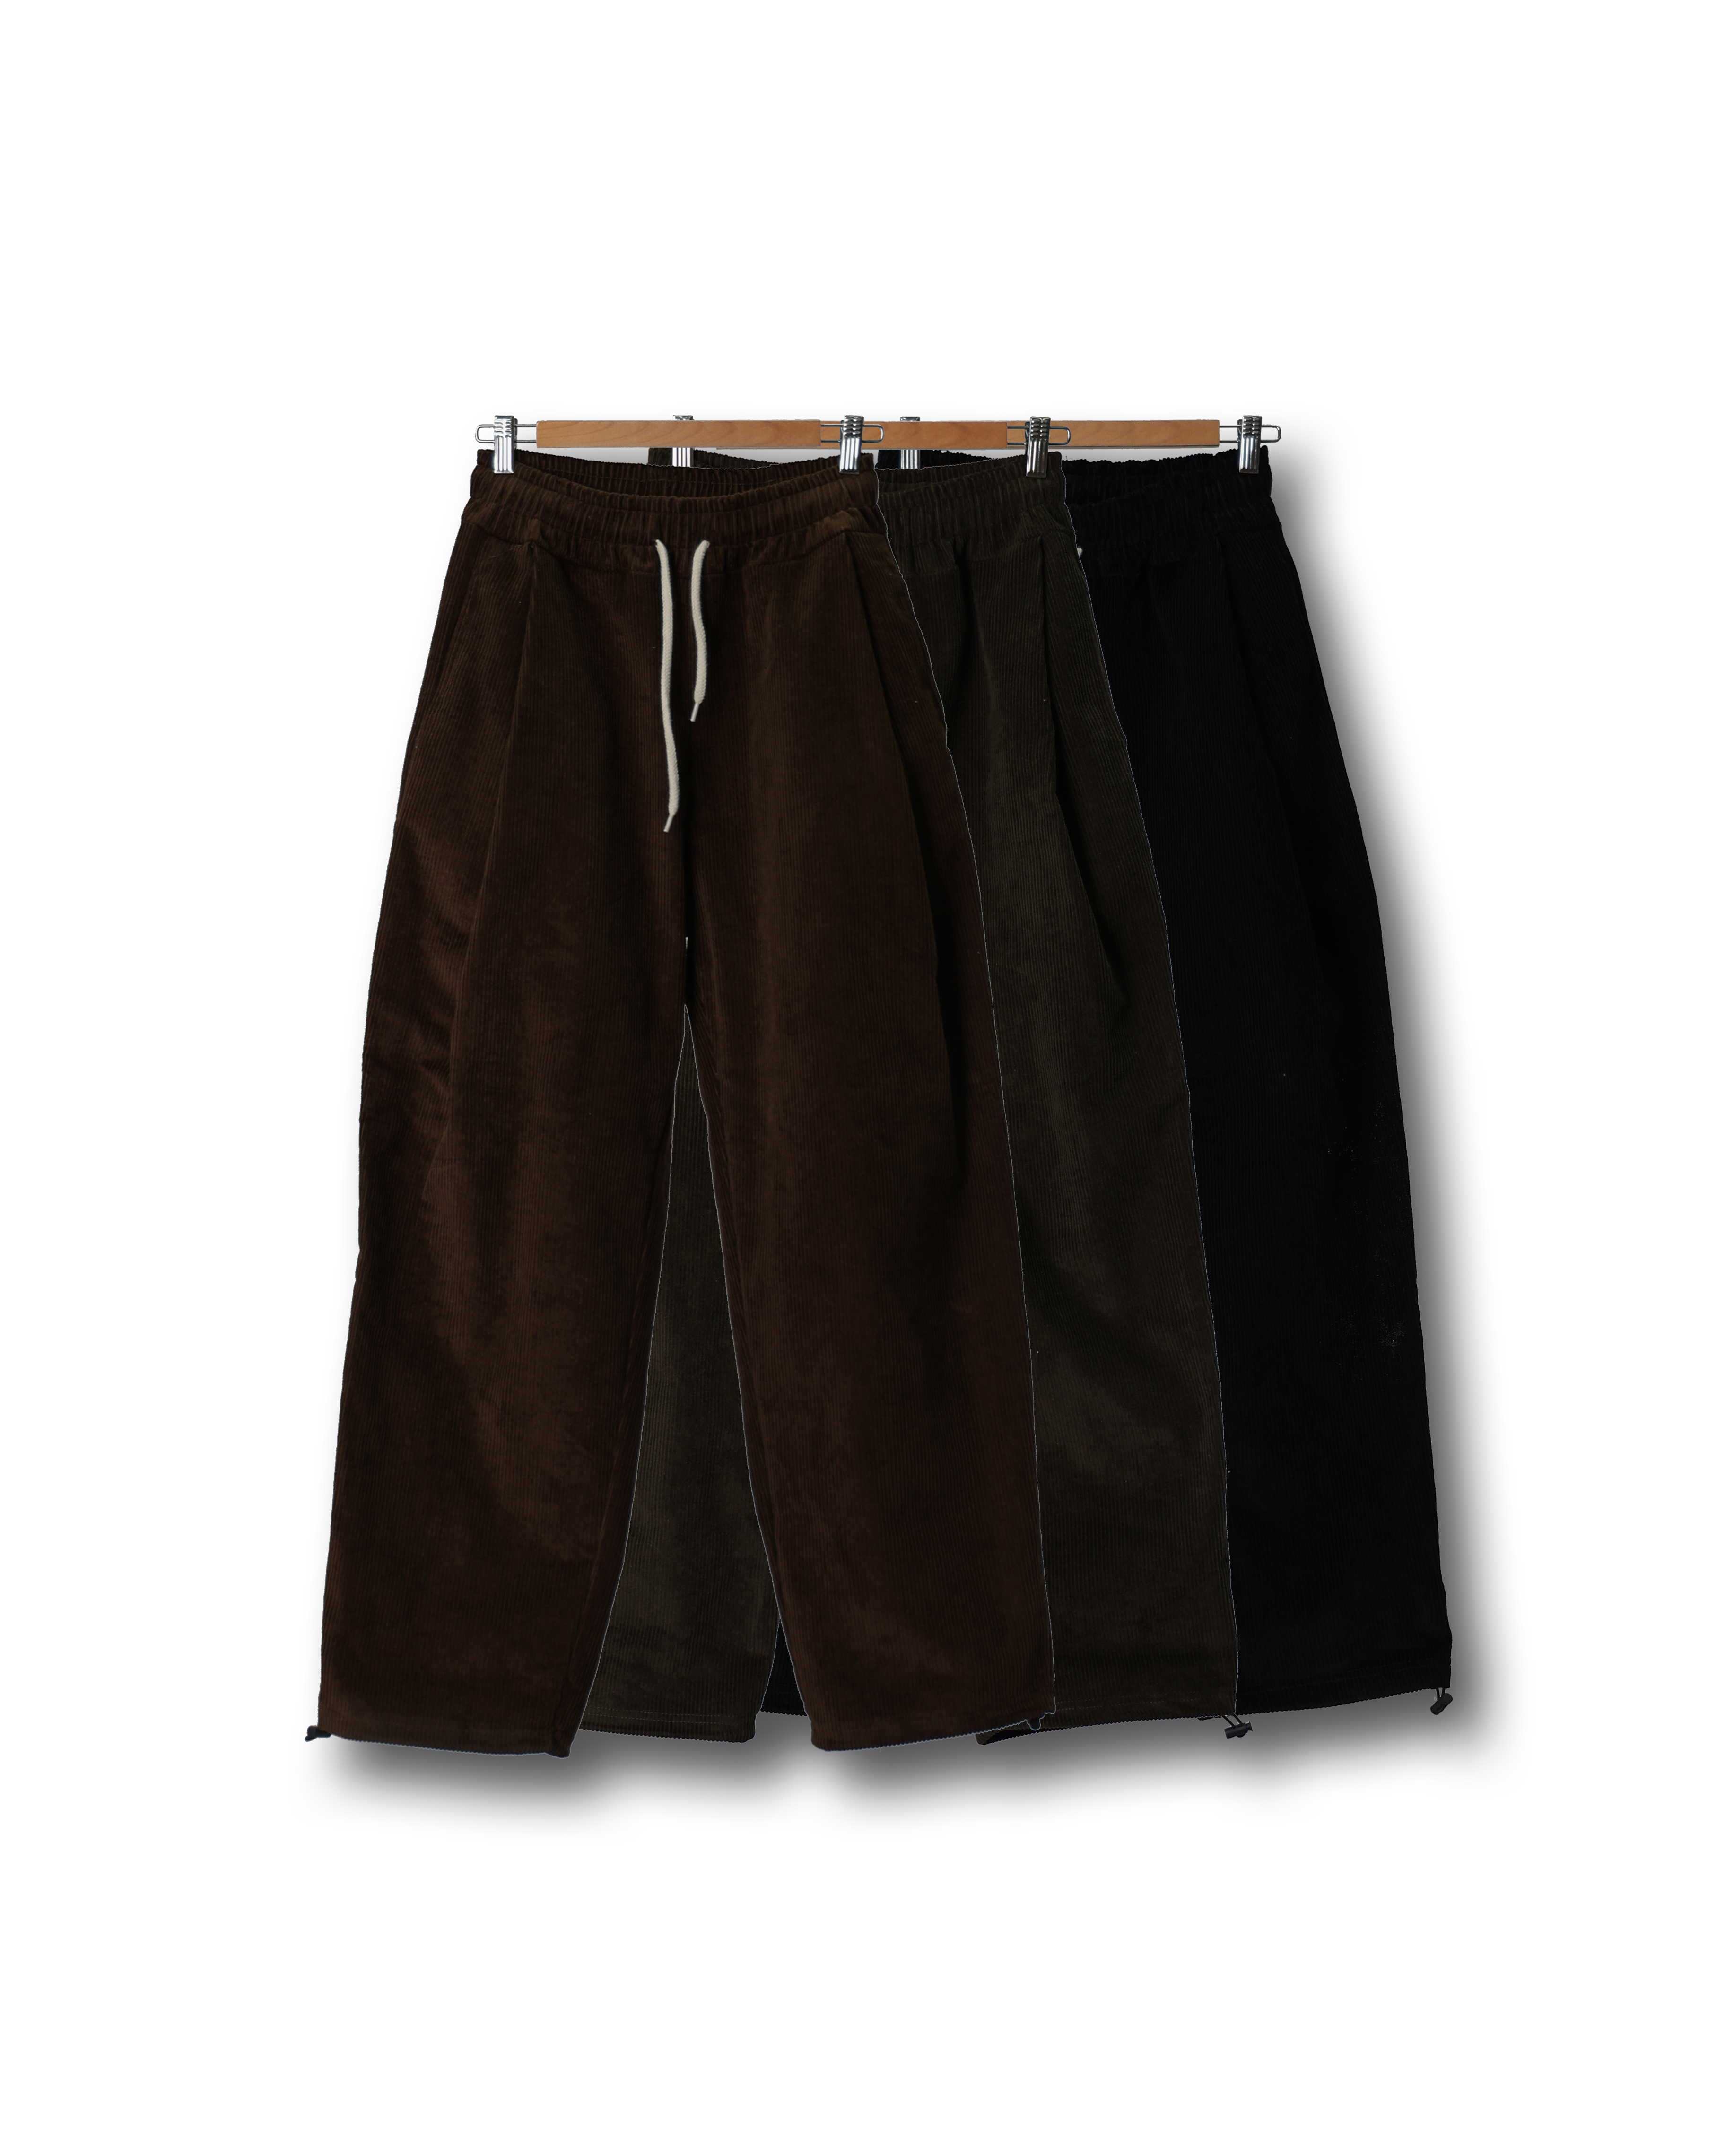 DENS Corduroy Wide Pleats Work Pants (Black/Olive/Brown)